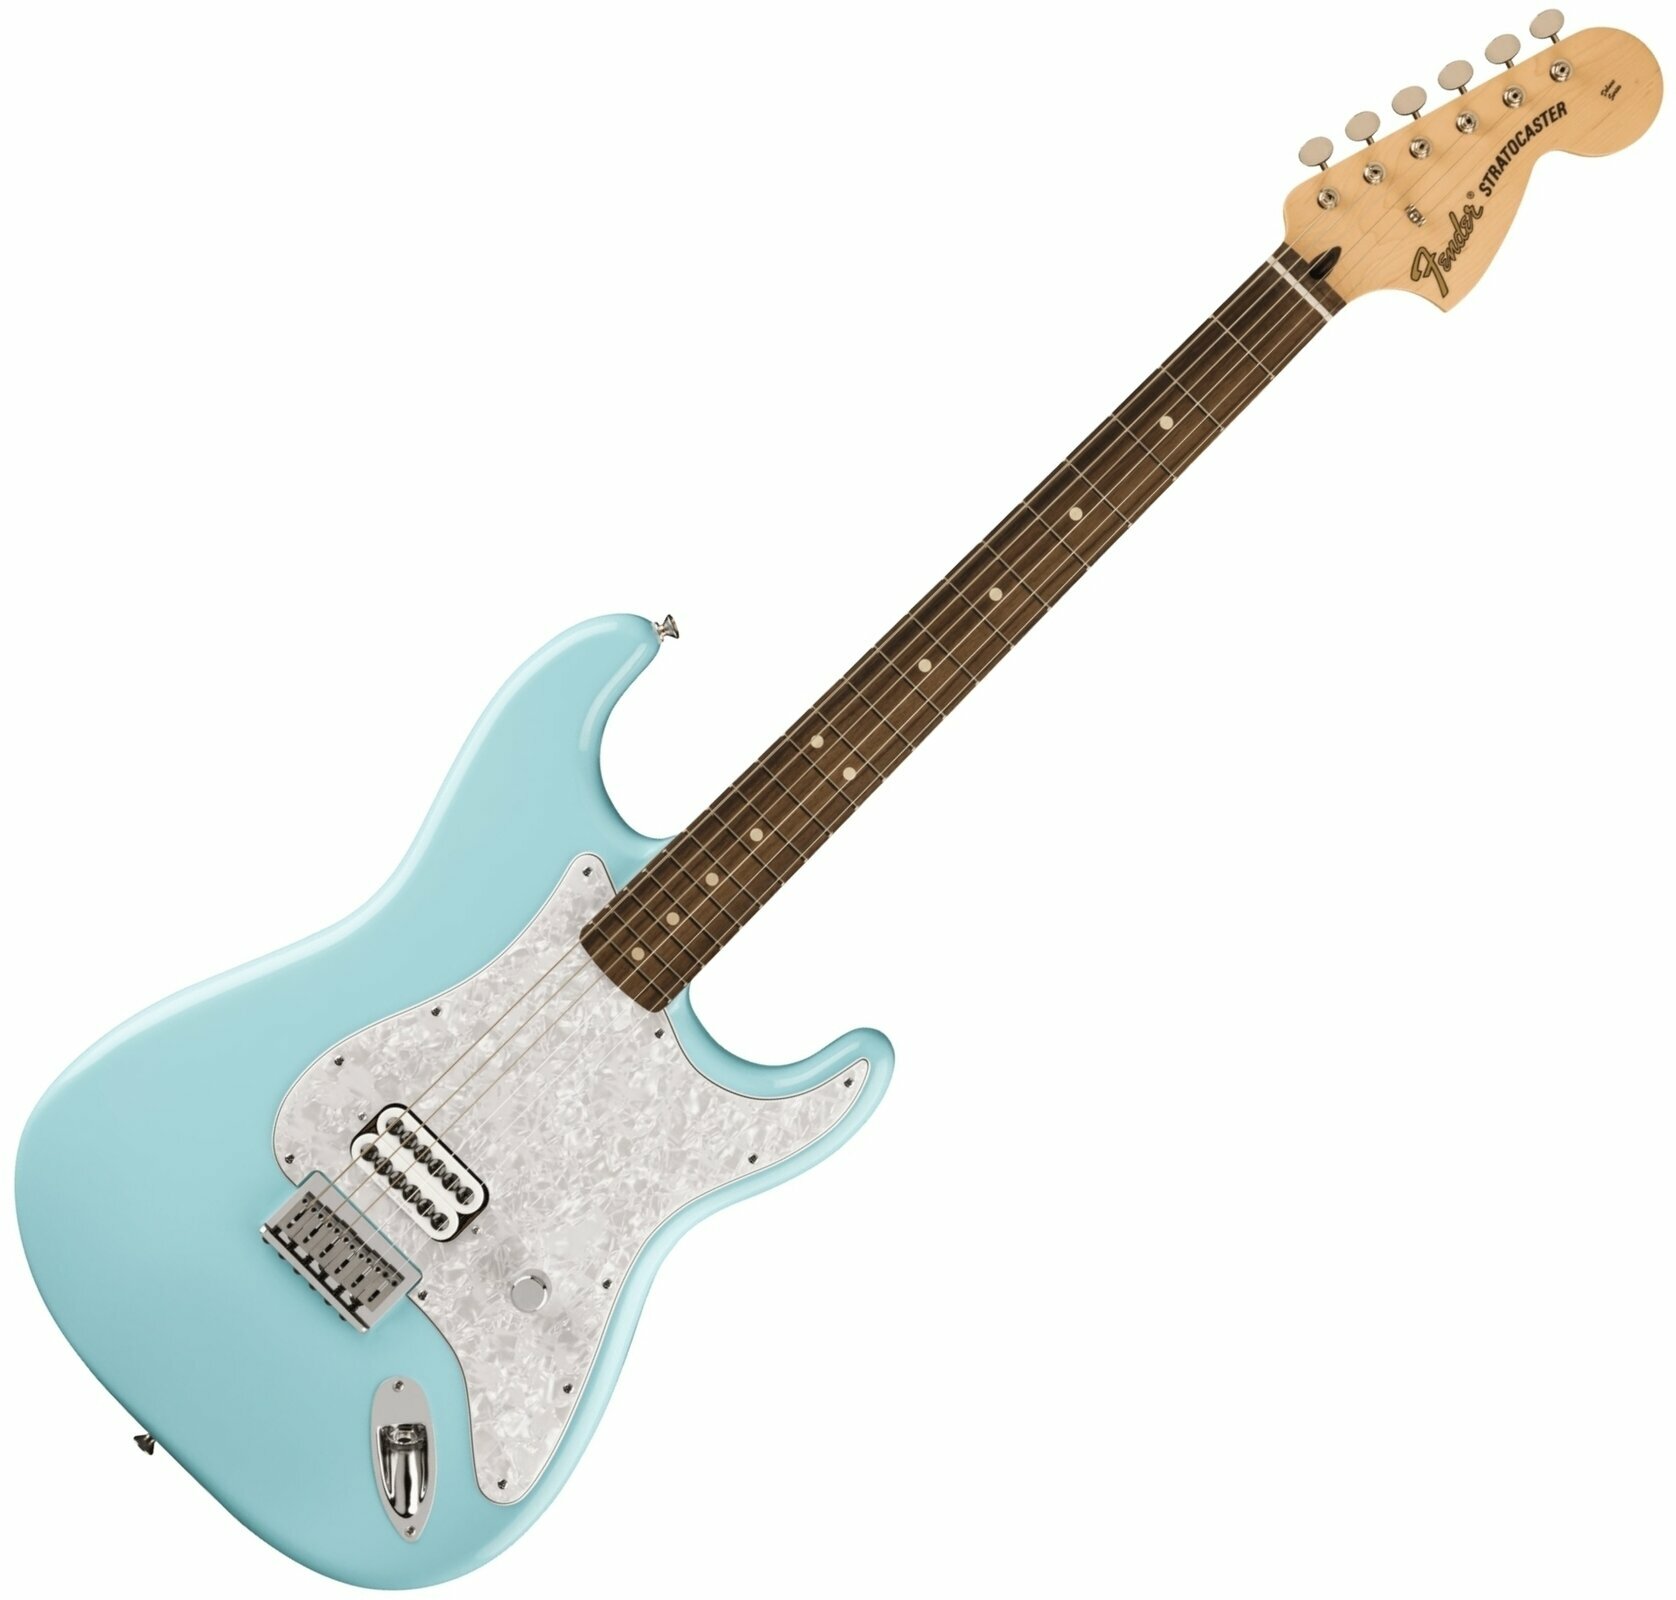 Fender Limited Edition Tom Delonge Stratocaster Daphne Blue Fender